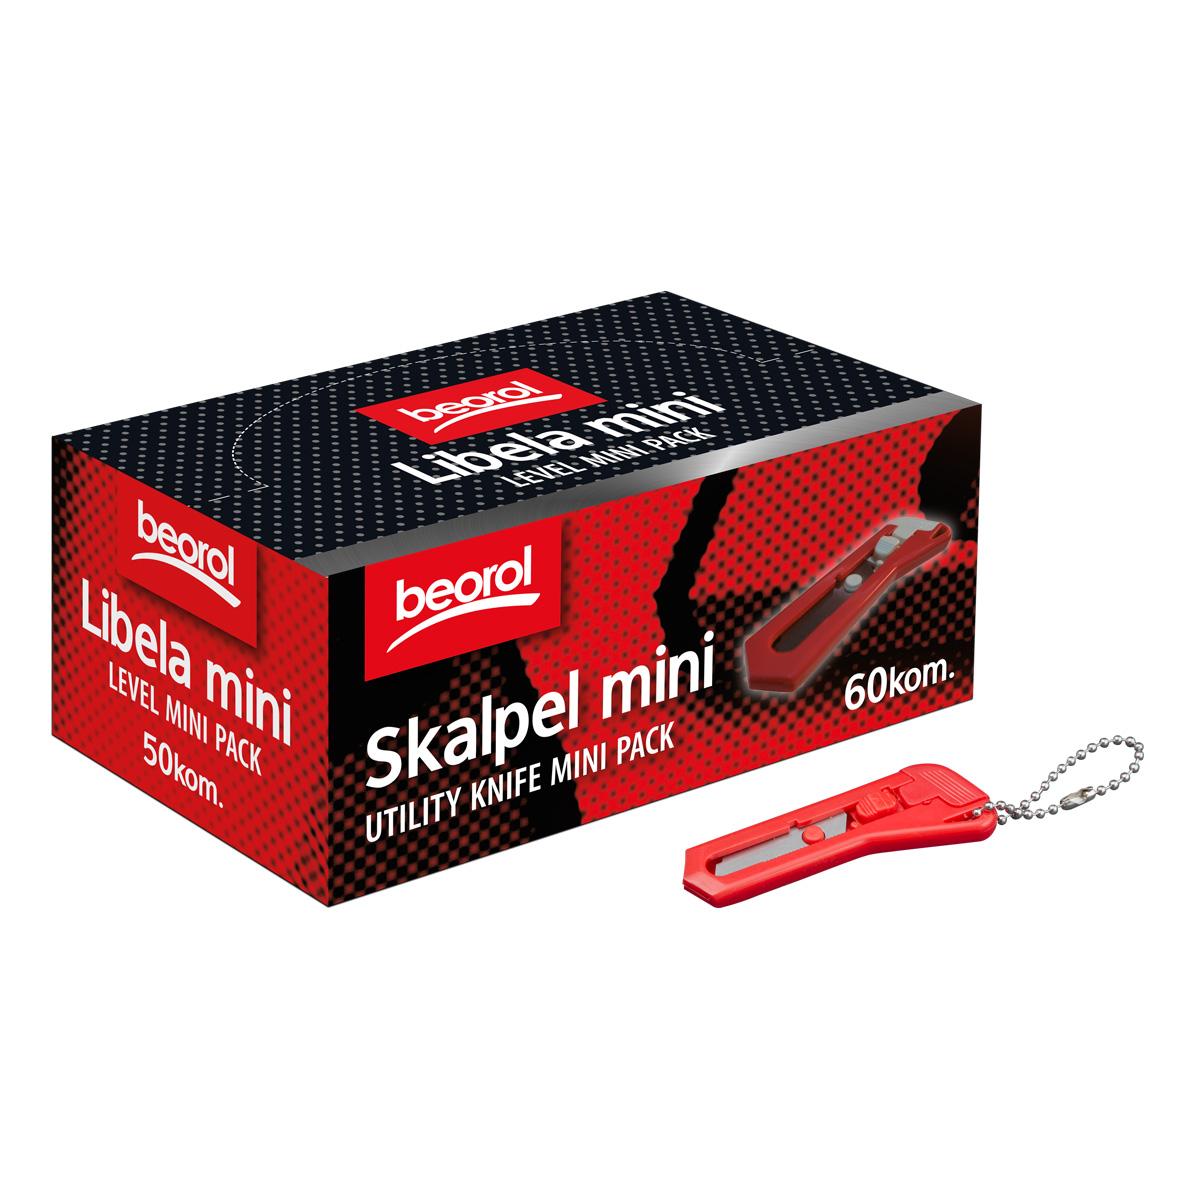 Selected image for BEOROL Skalpel mini 60/1 paket